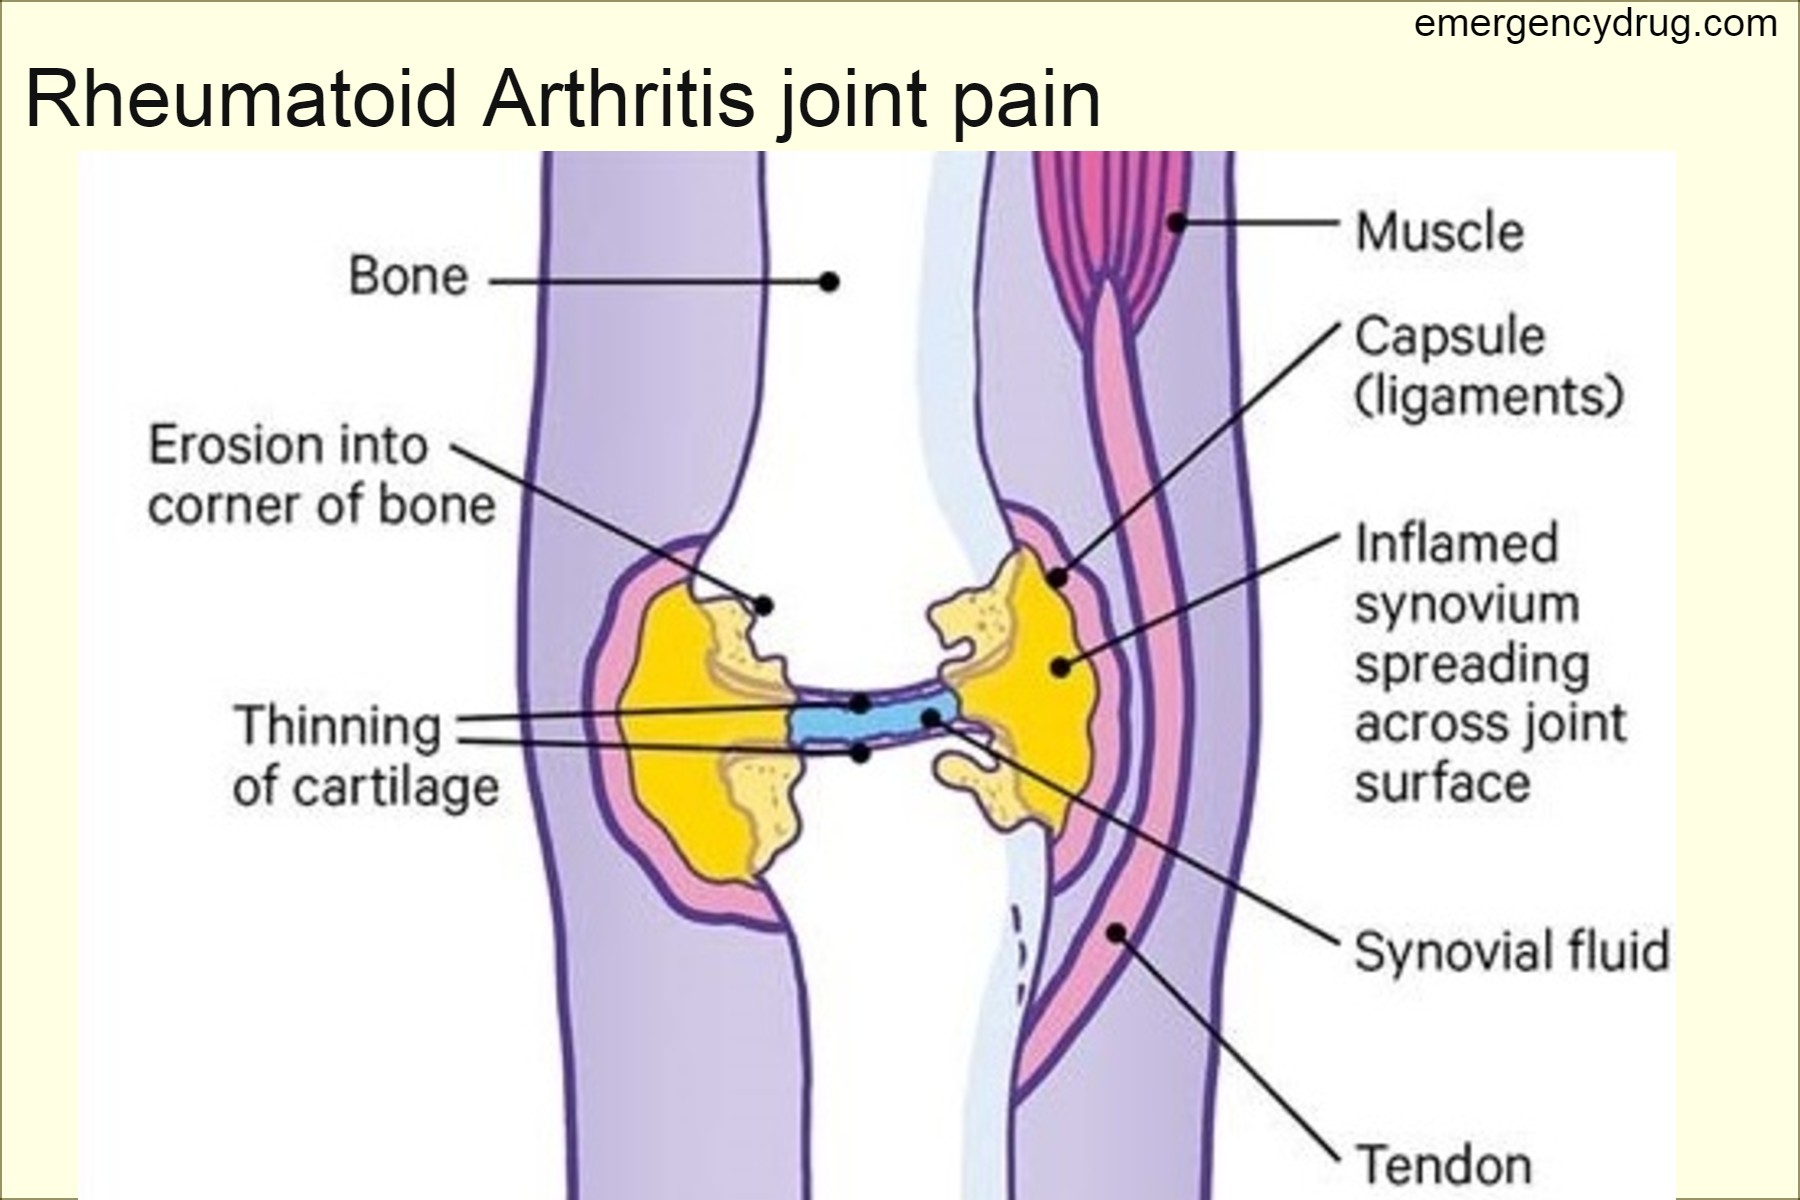 Rheumatoid Arthritis joint pain